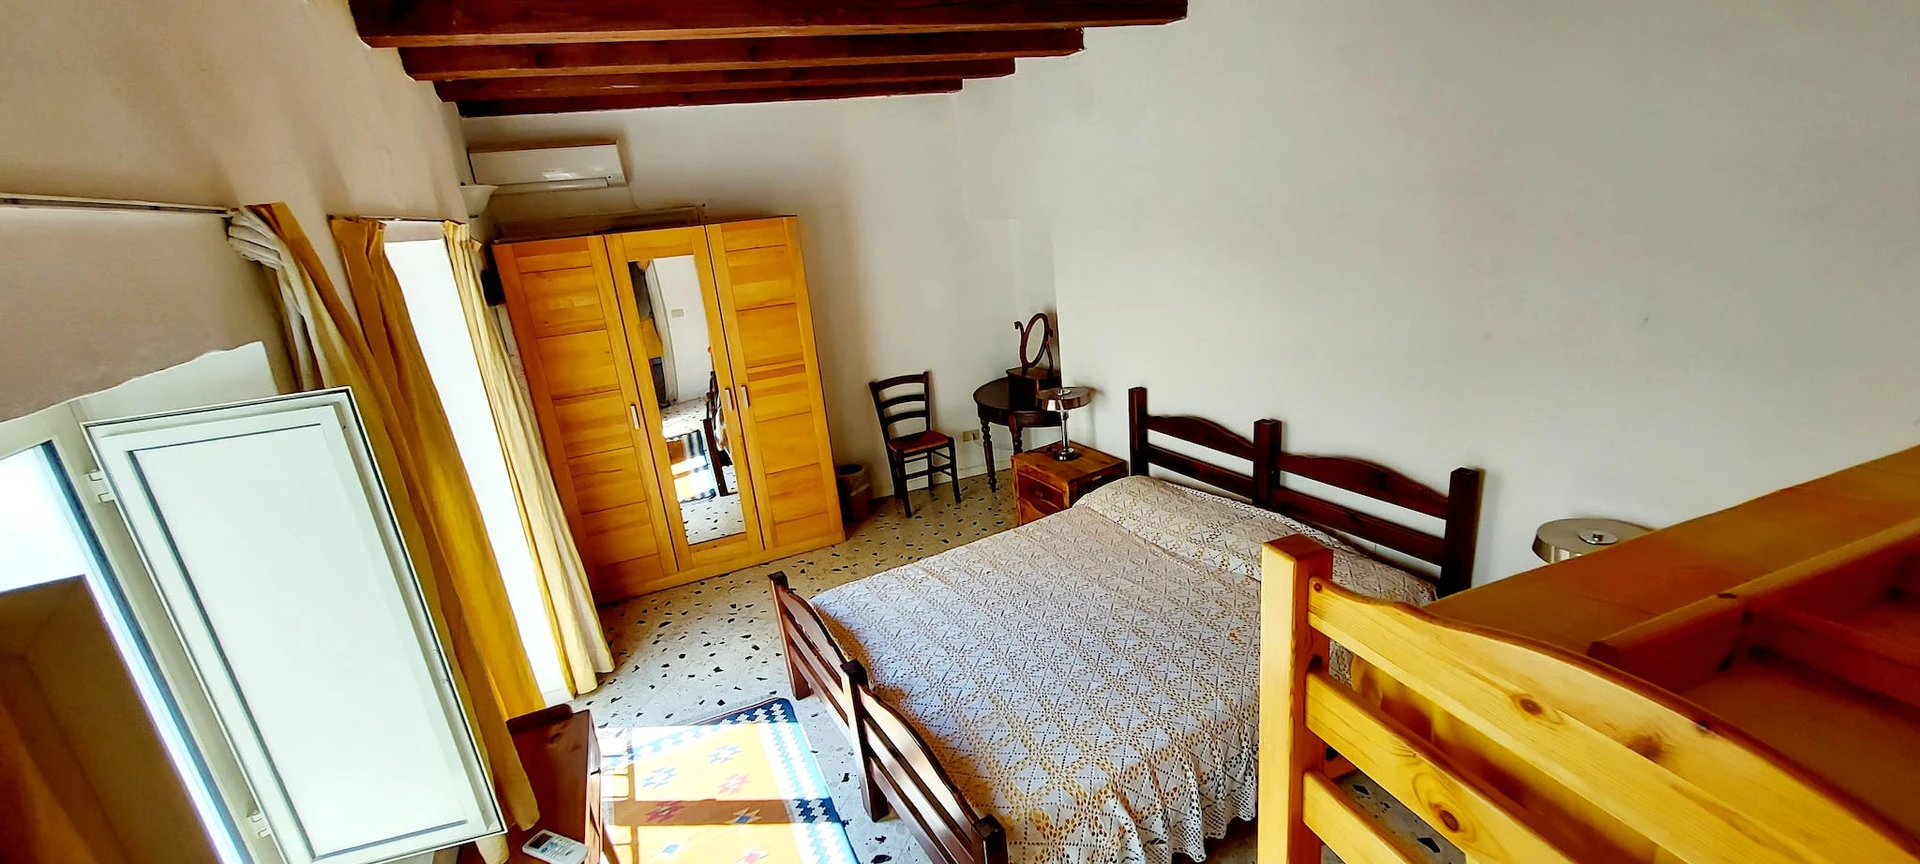 Pokój do wynajęcia z podwójnym łóżkiem w Palermo